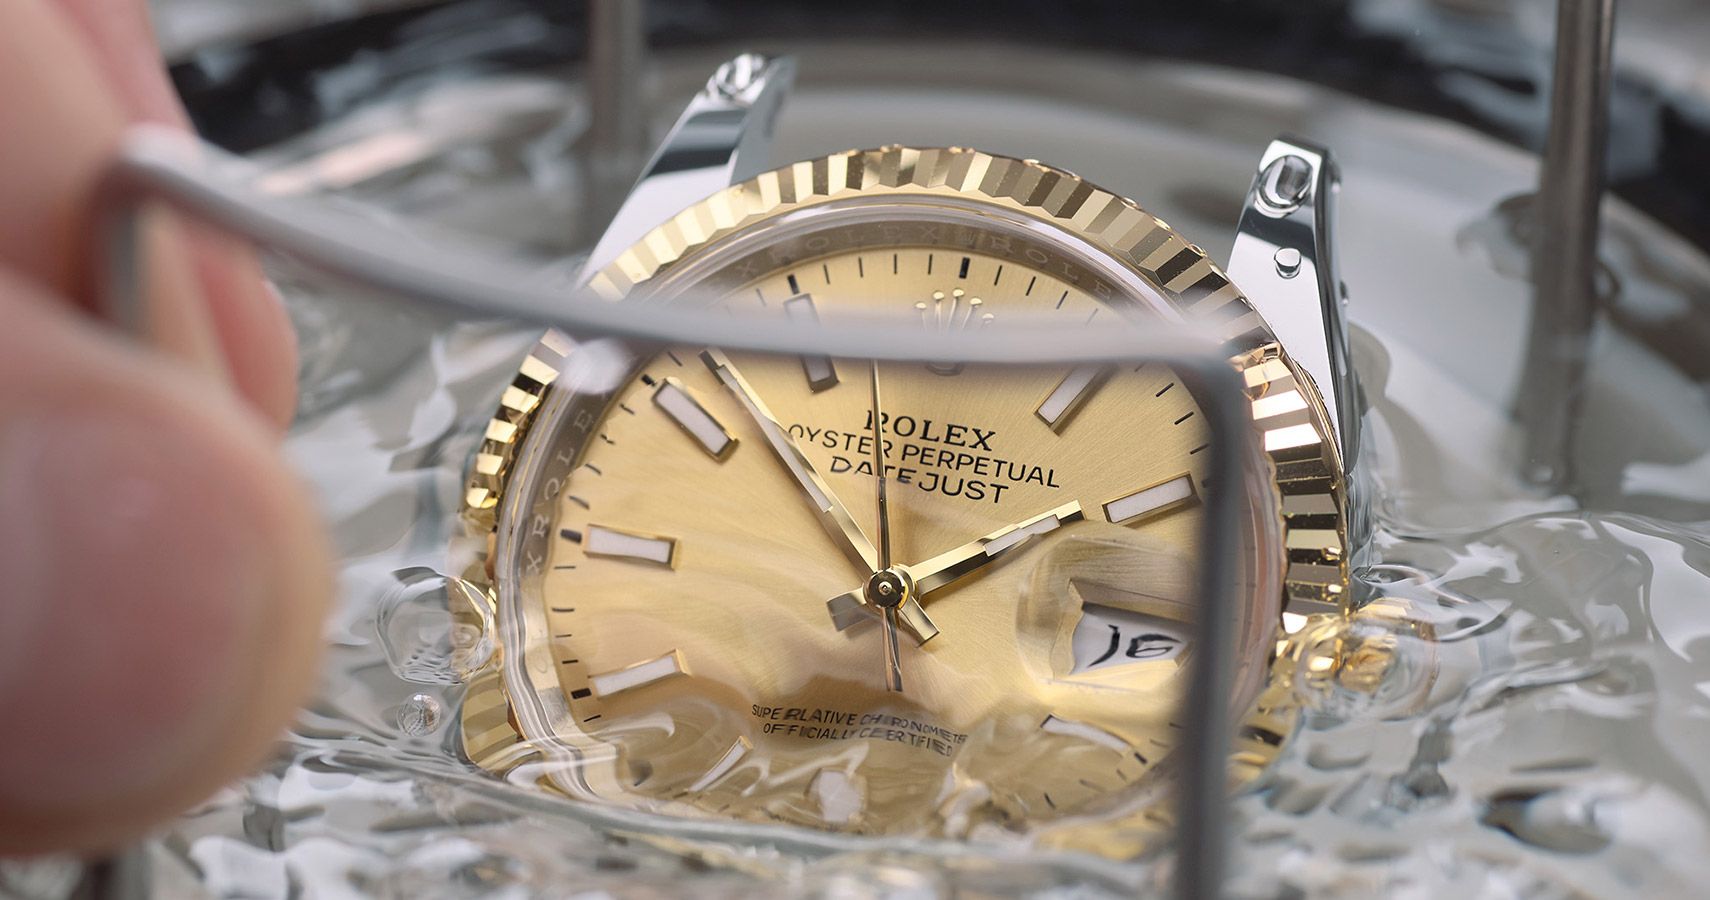 L’étanchéité de votre montre est contrôlée à l’aide d’un test 
sous pression dans l’eau, puis le bracelet est remonté sur le boîtier.